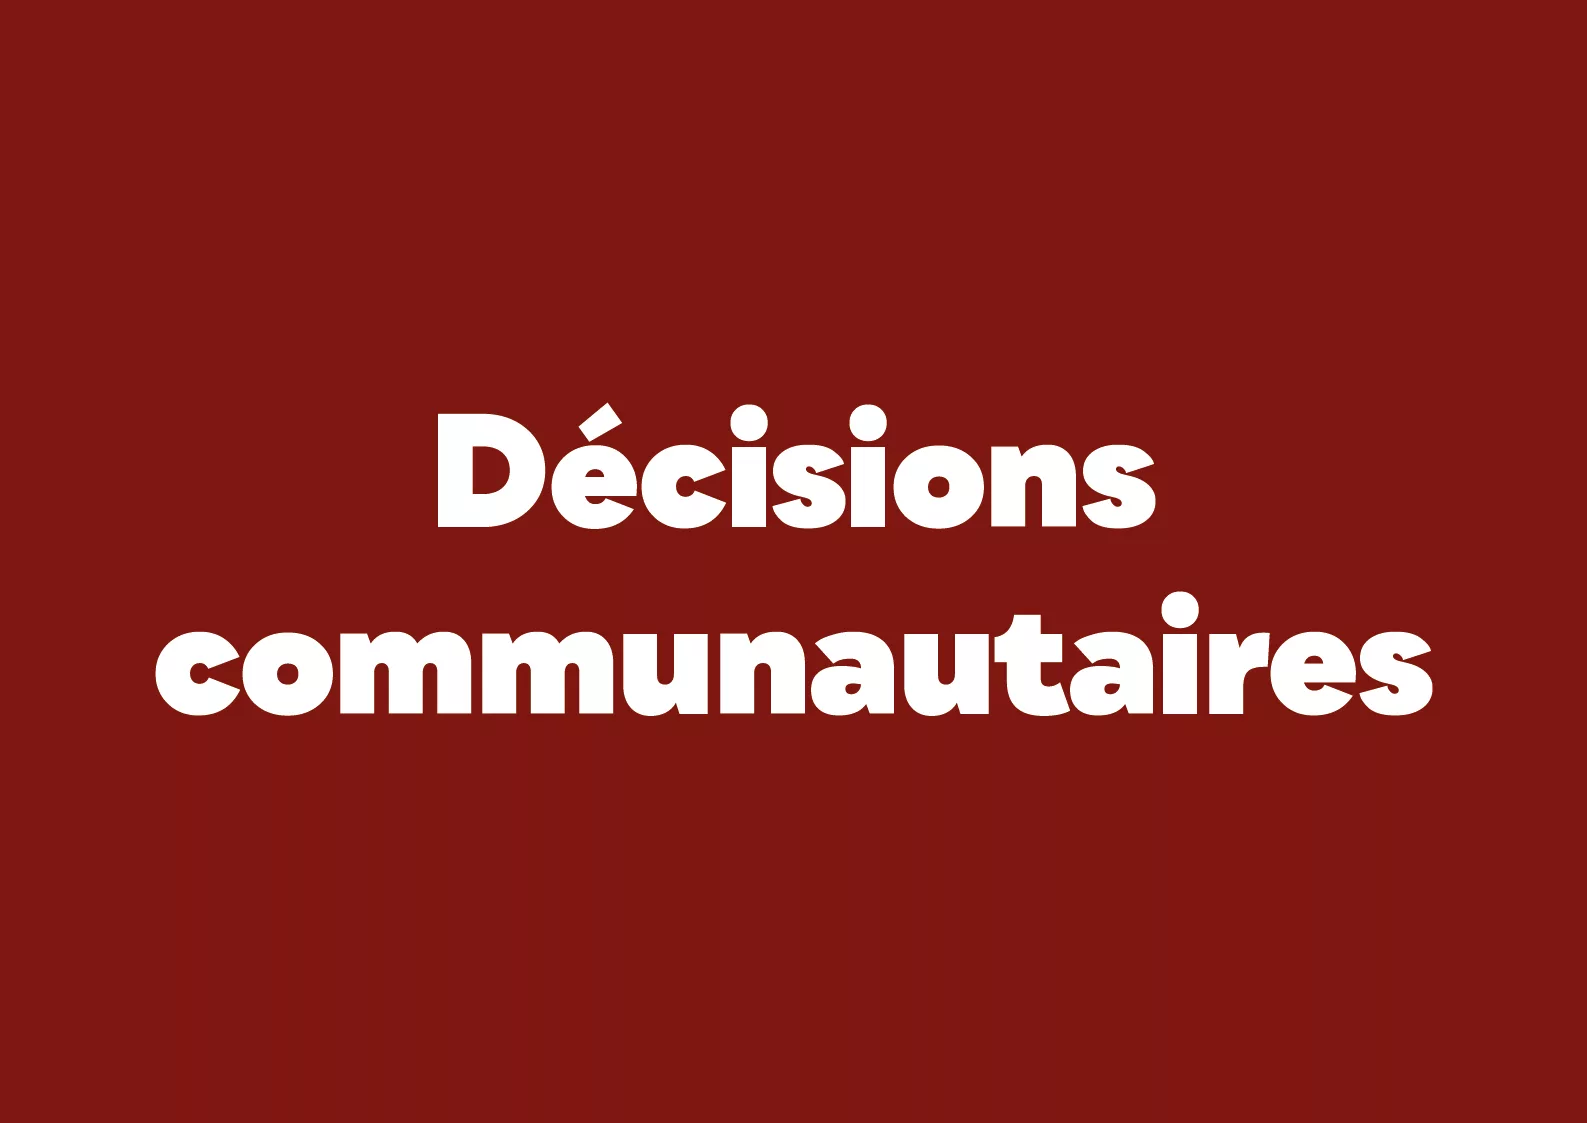 Decisions communautaires